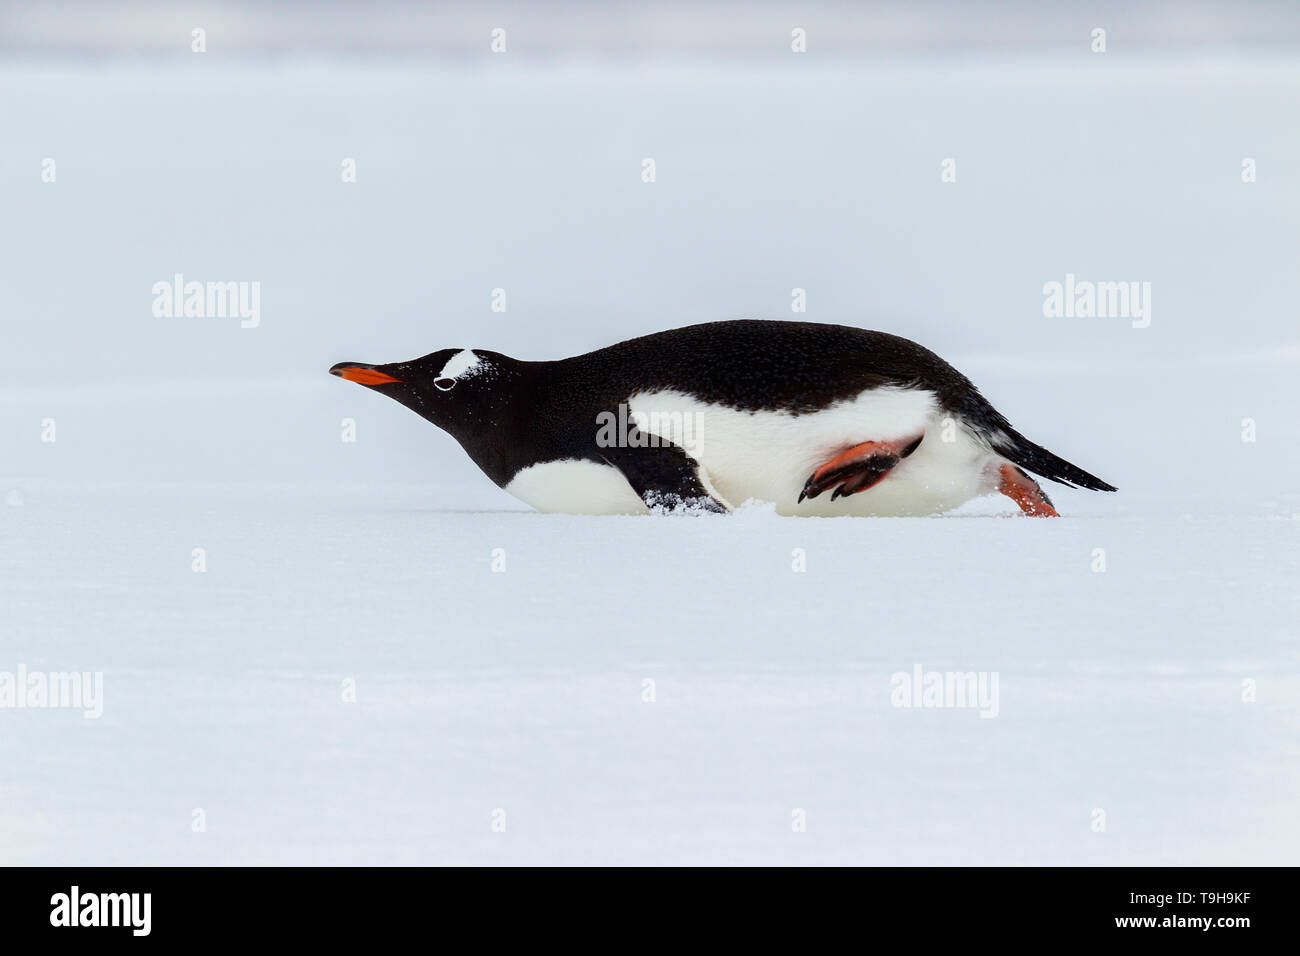 Ein gentoo Penguin rutschen auf dem Bauch, Antarktis Stockfotografie - Alamy